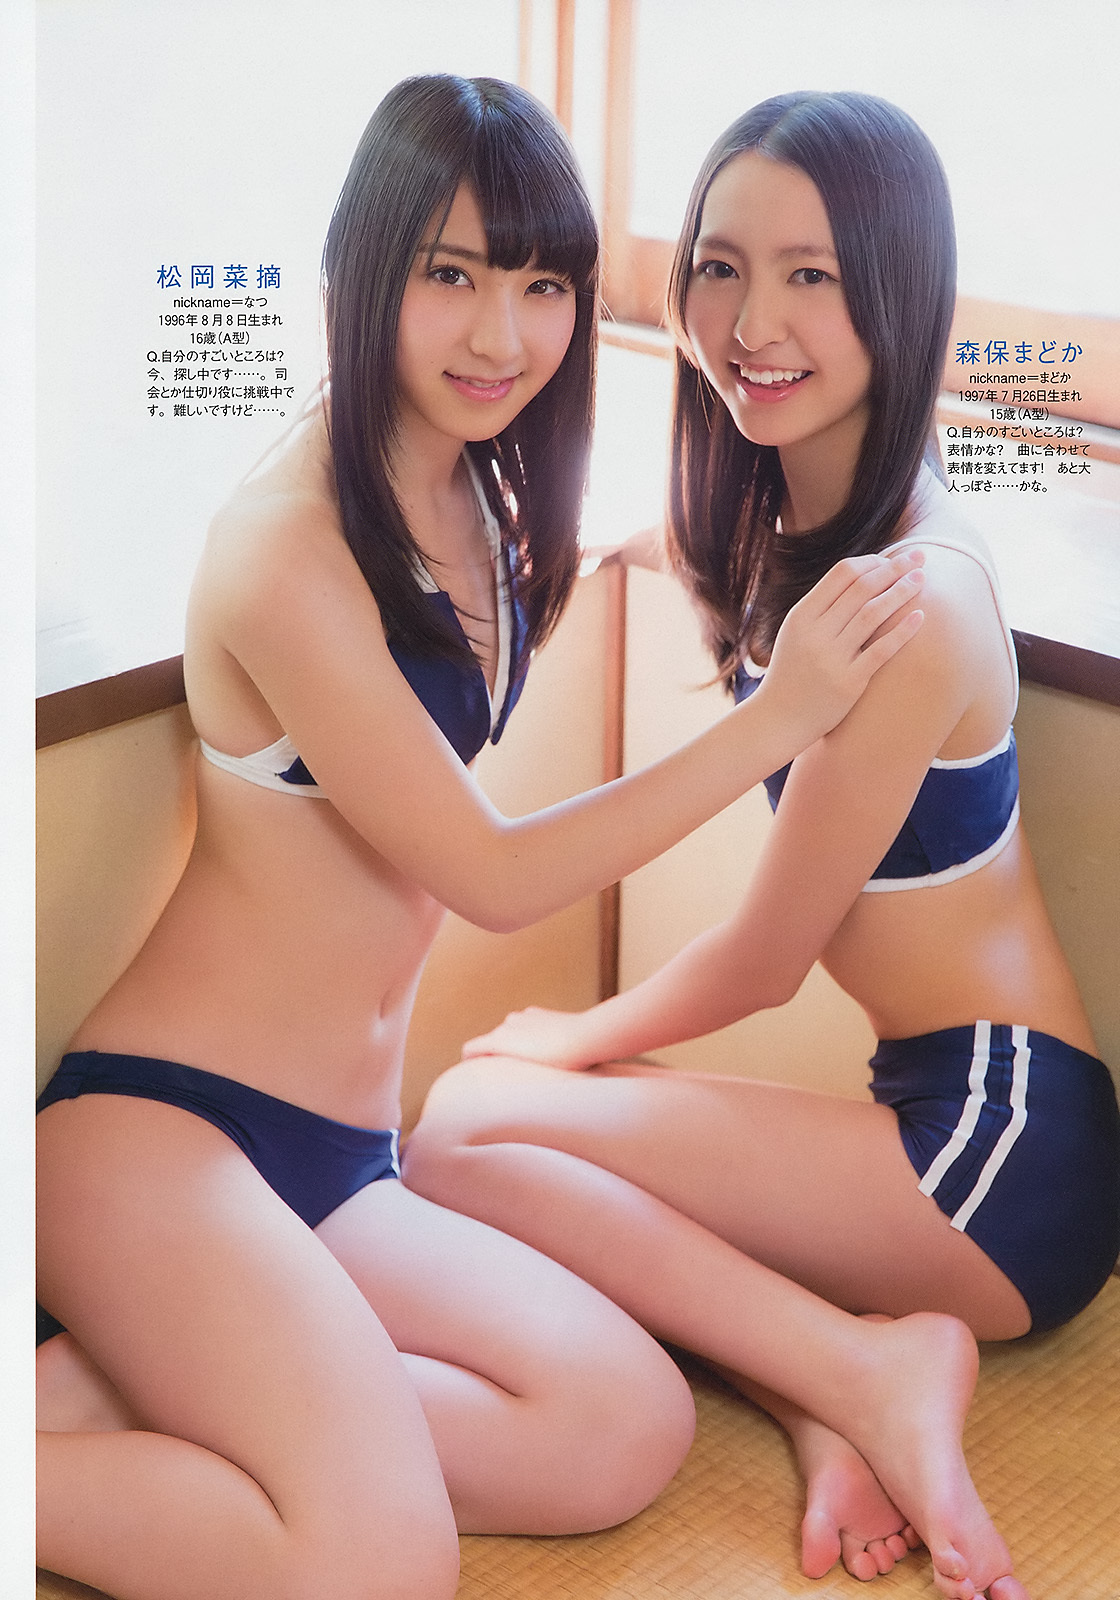 小島瑠璃子 岩﨑名美 壇密 内田理央[Weekly Playboy] 2013 No.13